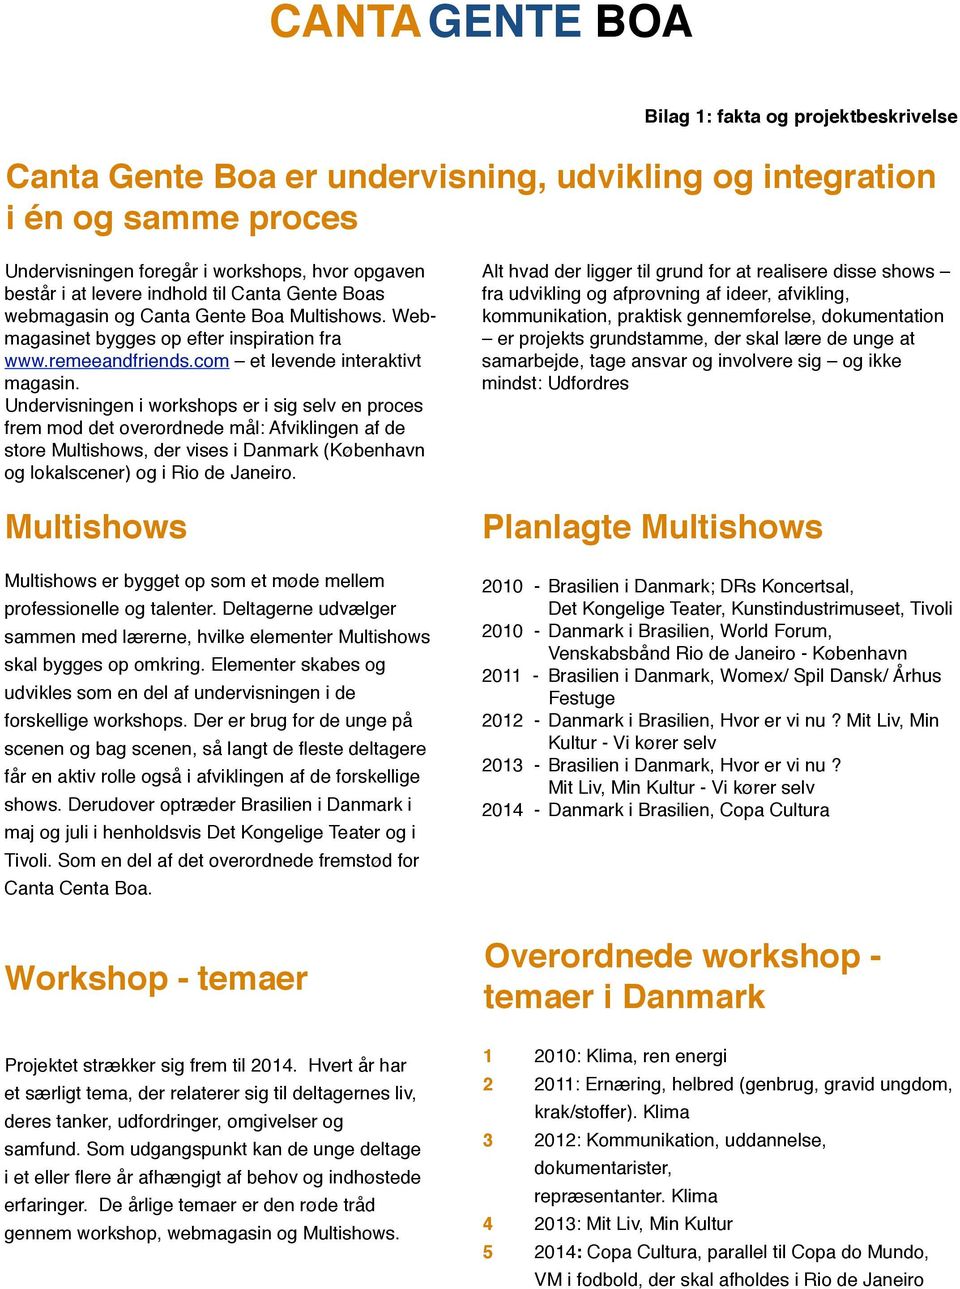 Undervisningen i workshops er i sig selv en proces frem mod det overordnede mål: Afviklingen af de store Multishows, der vises i Danmark (København og lokalscener) og i Rio de Janeiro.